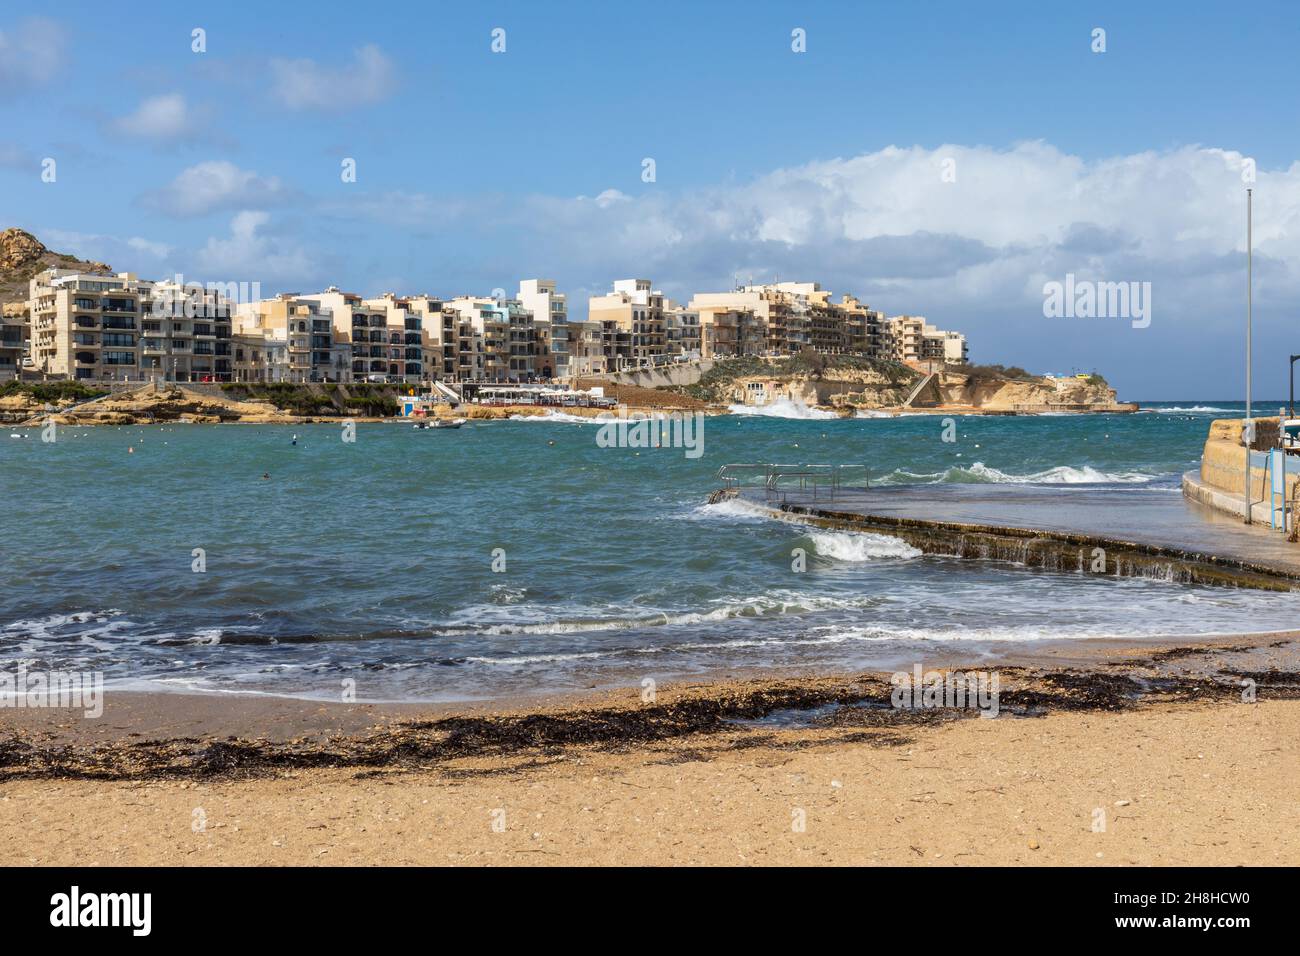 Marsalforn Bay a popular holiday resort in Marsalforn, Gozo, Malta, Europe. Stock Photo